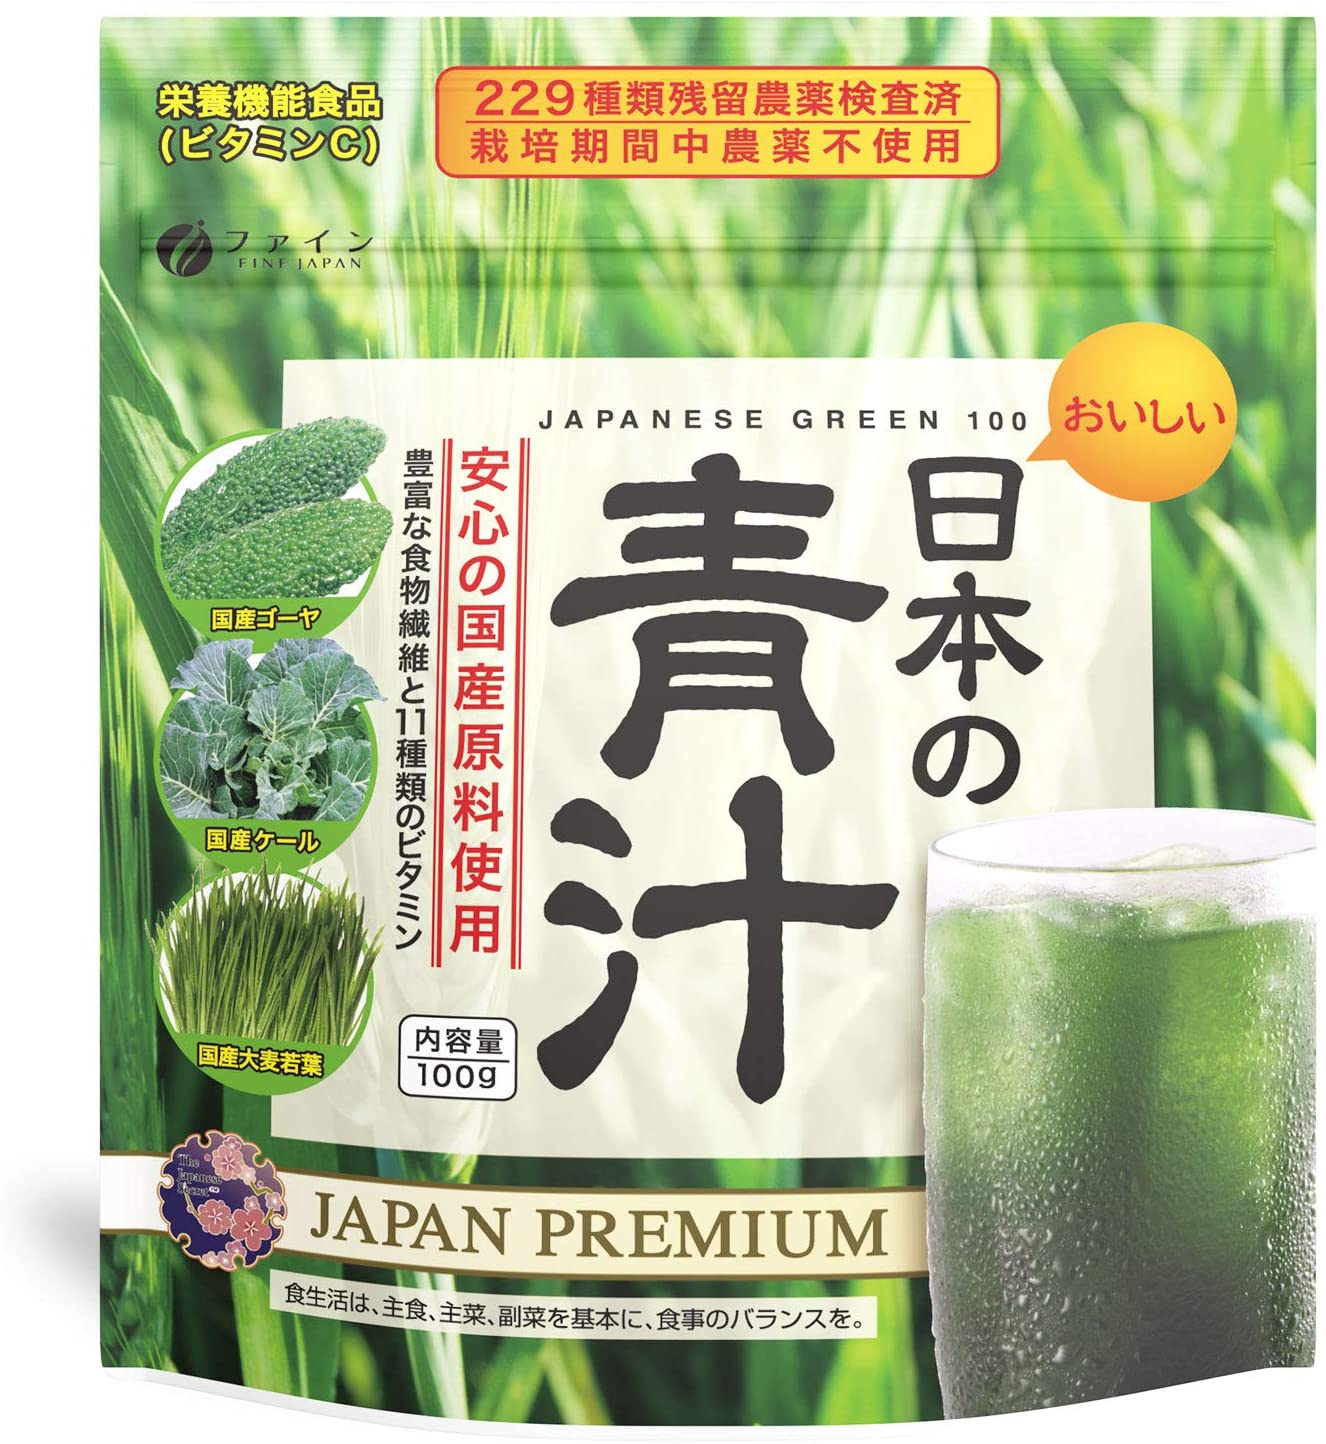 Зеленый растворимый коктейль аодзиру Japanese Green 100, 100 гр